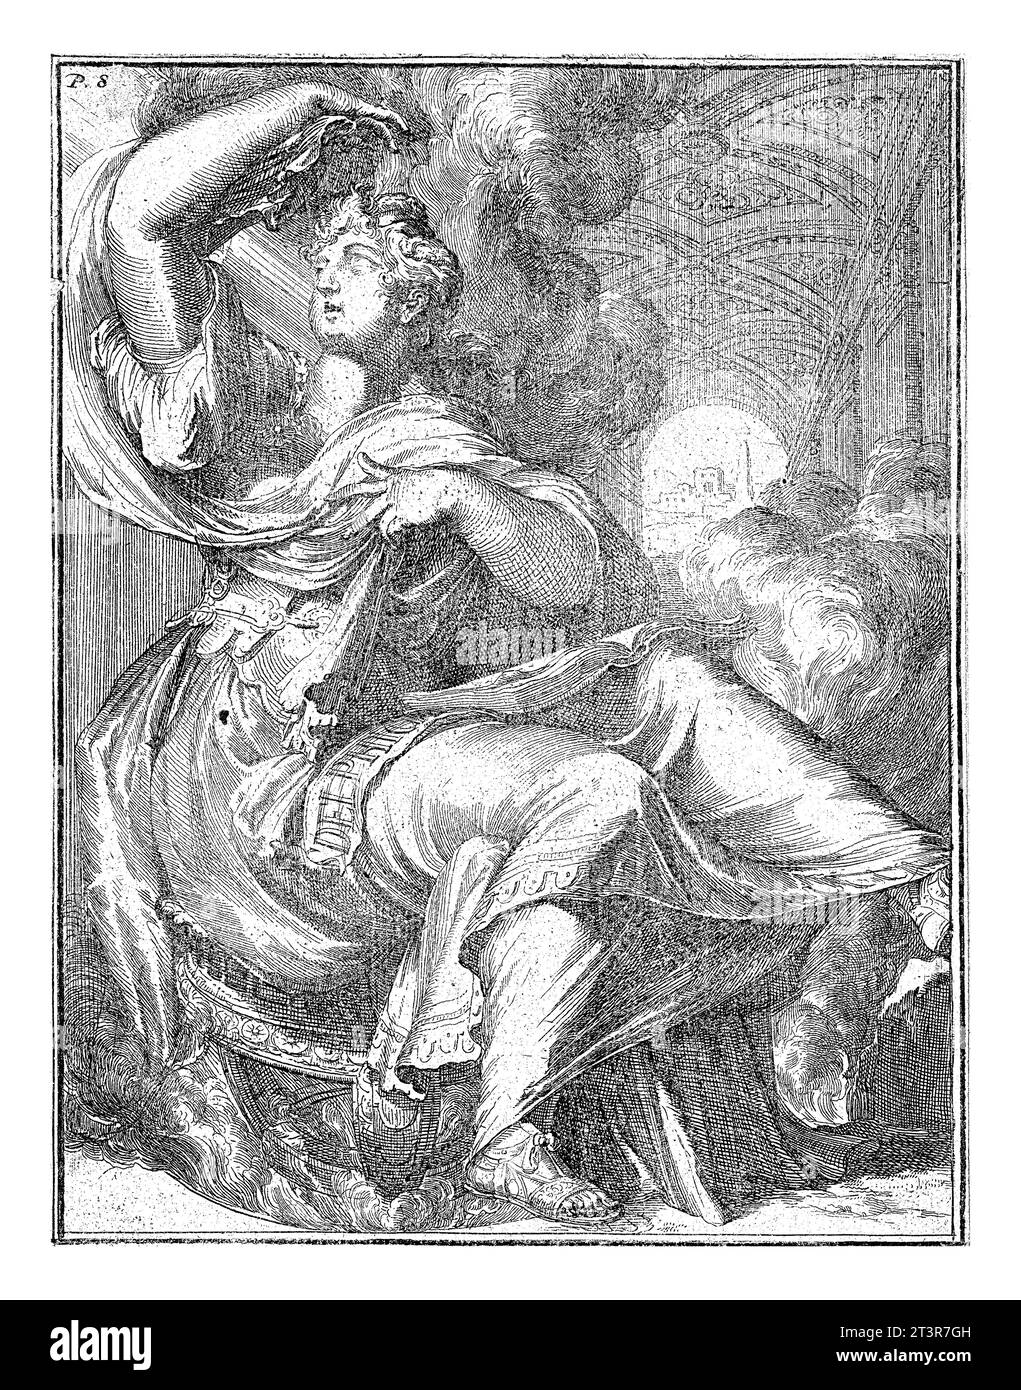 Sibyl of Delphi, Romeyn de Hooghe (attributed to), after Romeyn de Hooghe, 1688 Sibyl of Delphi Stock Photo